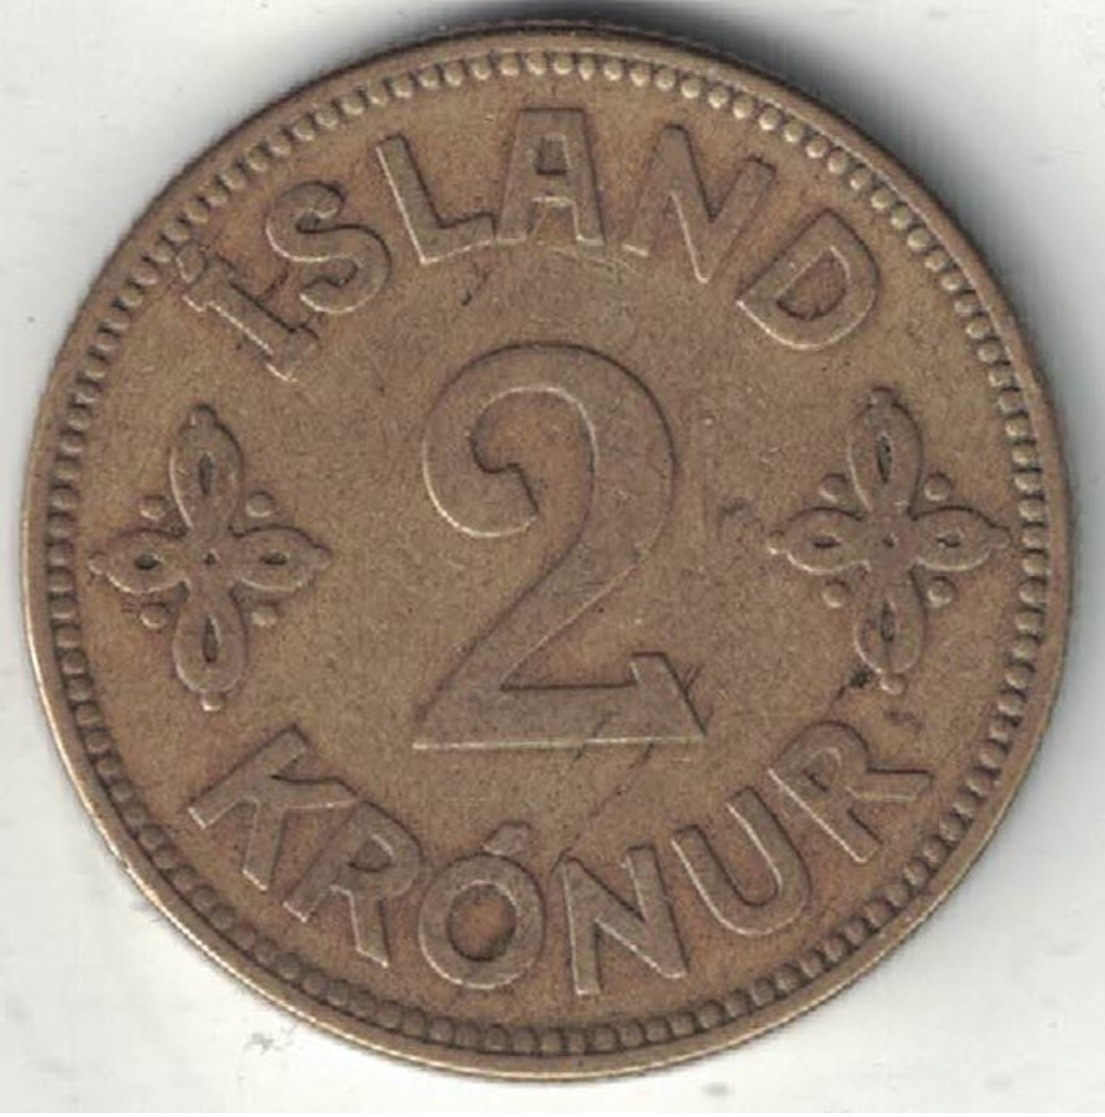 Iceland 2 Kronur – 1925 - Iceland